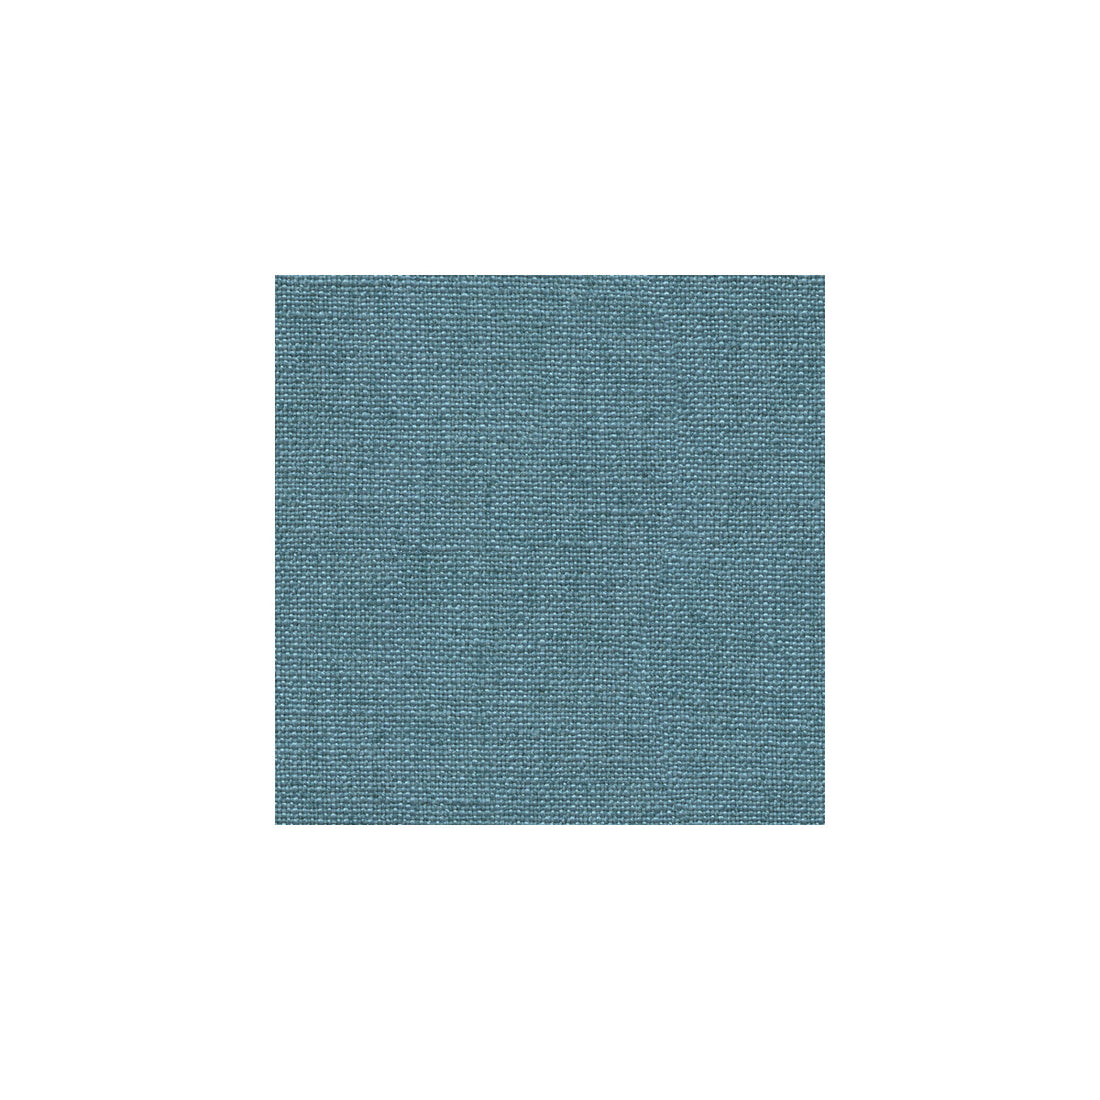 Kravet Basics fabric in 33008-5 color - pattern 33008.5.0 - by Kravet Basics